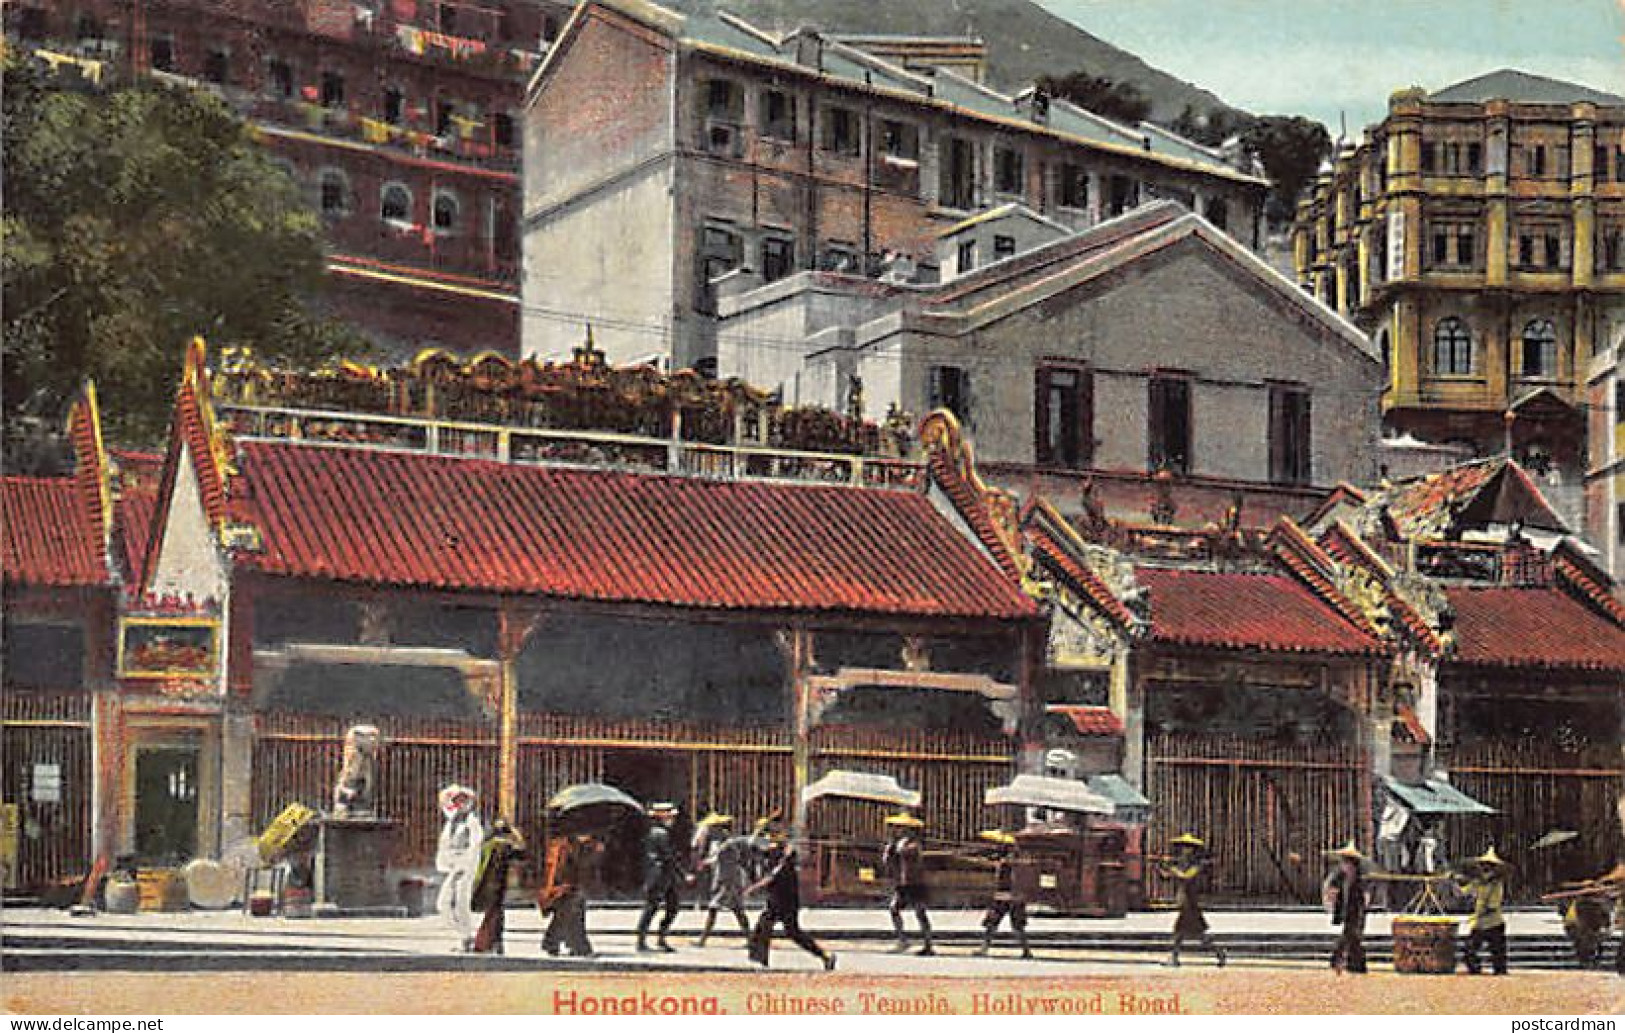 China - HONG KONG - Chinese Temple, Hollywood Road - Publ. Turco-Egyptian Tobacco Store  - China (Hongkong)